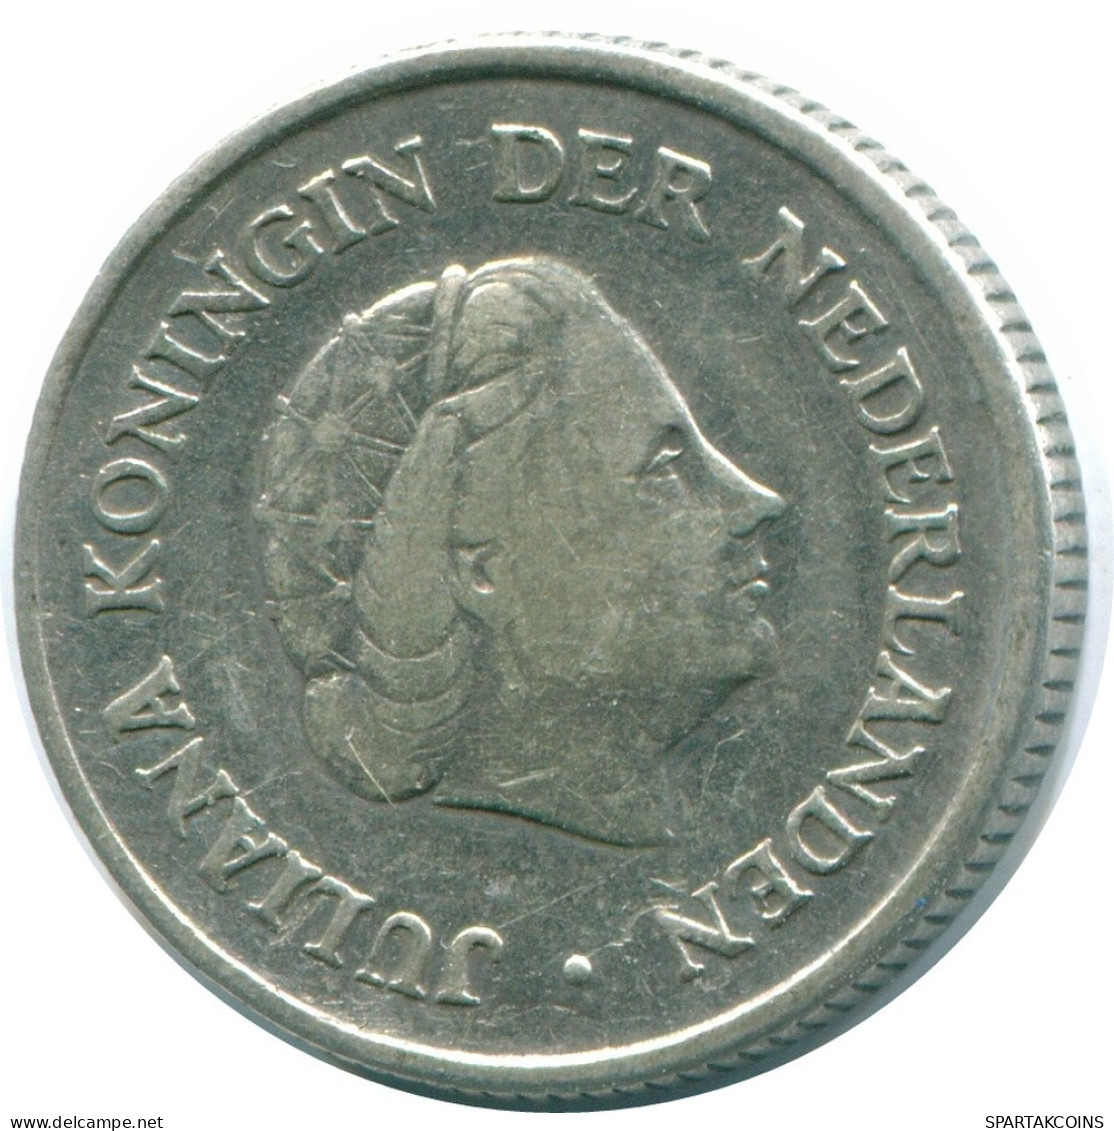 1/4 GULDEN 1962 NIEDERLÄNDISCHE ANTILLEN SILBER Koloniale Münze #NL11177.4.D.A - Niederländische Antillen